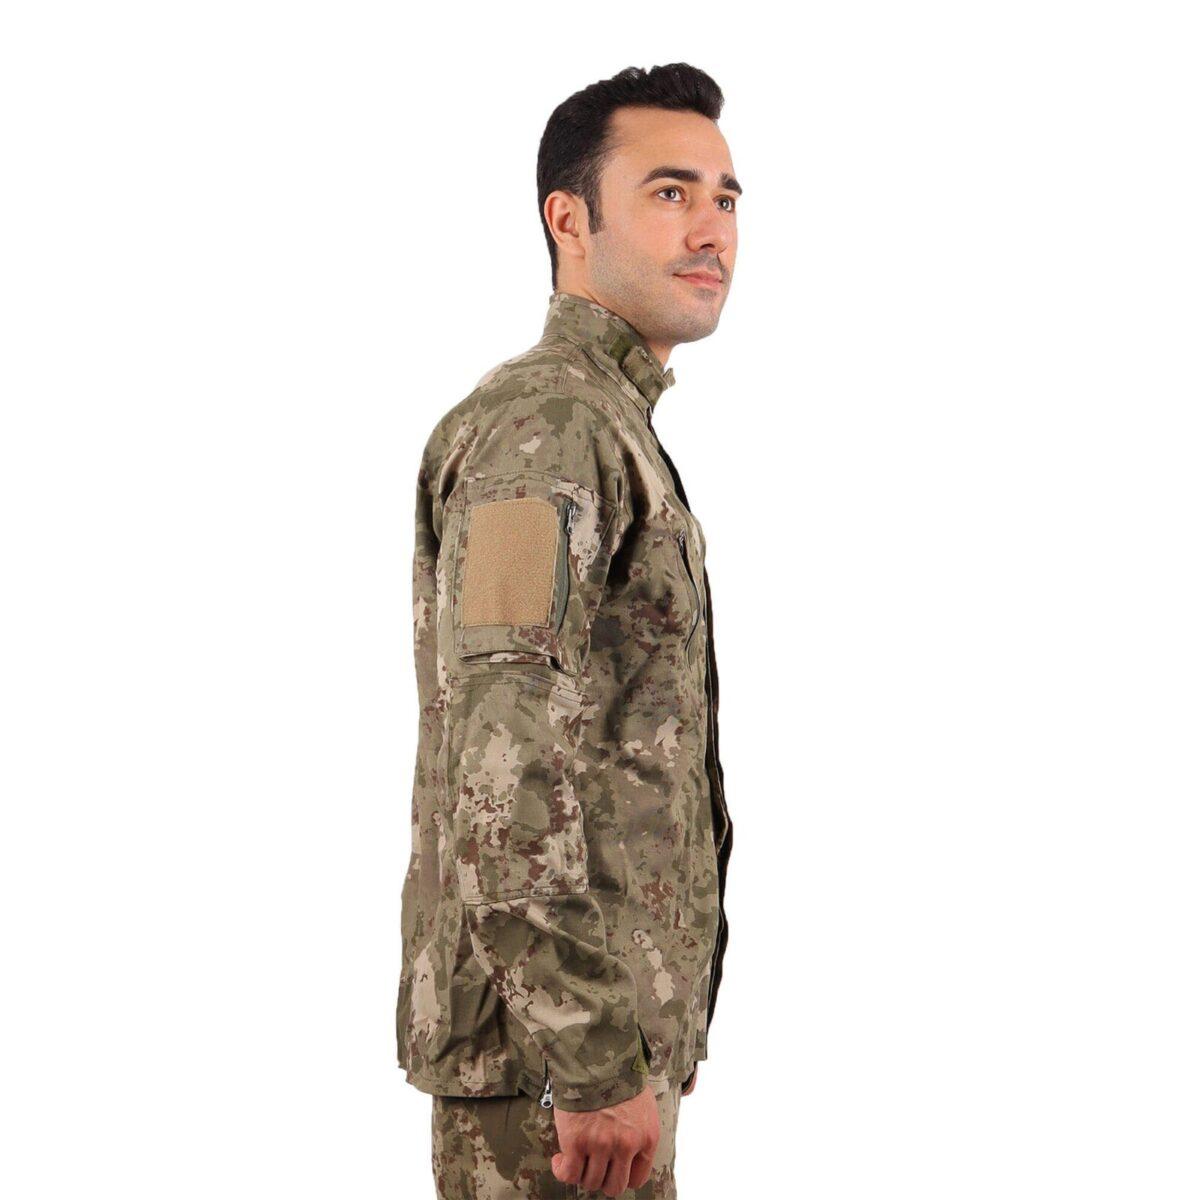 yeni tsk kamuflaj askeri uzun kol gomlek kislik askeri gomlek askeri giyim